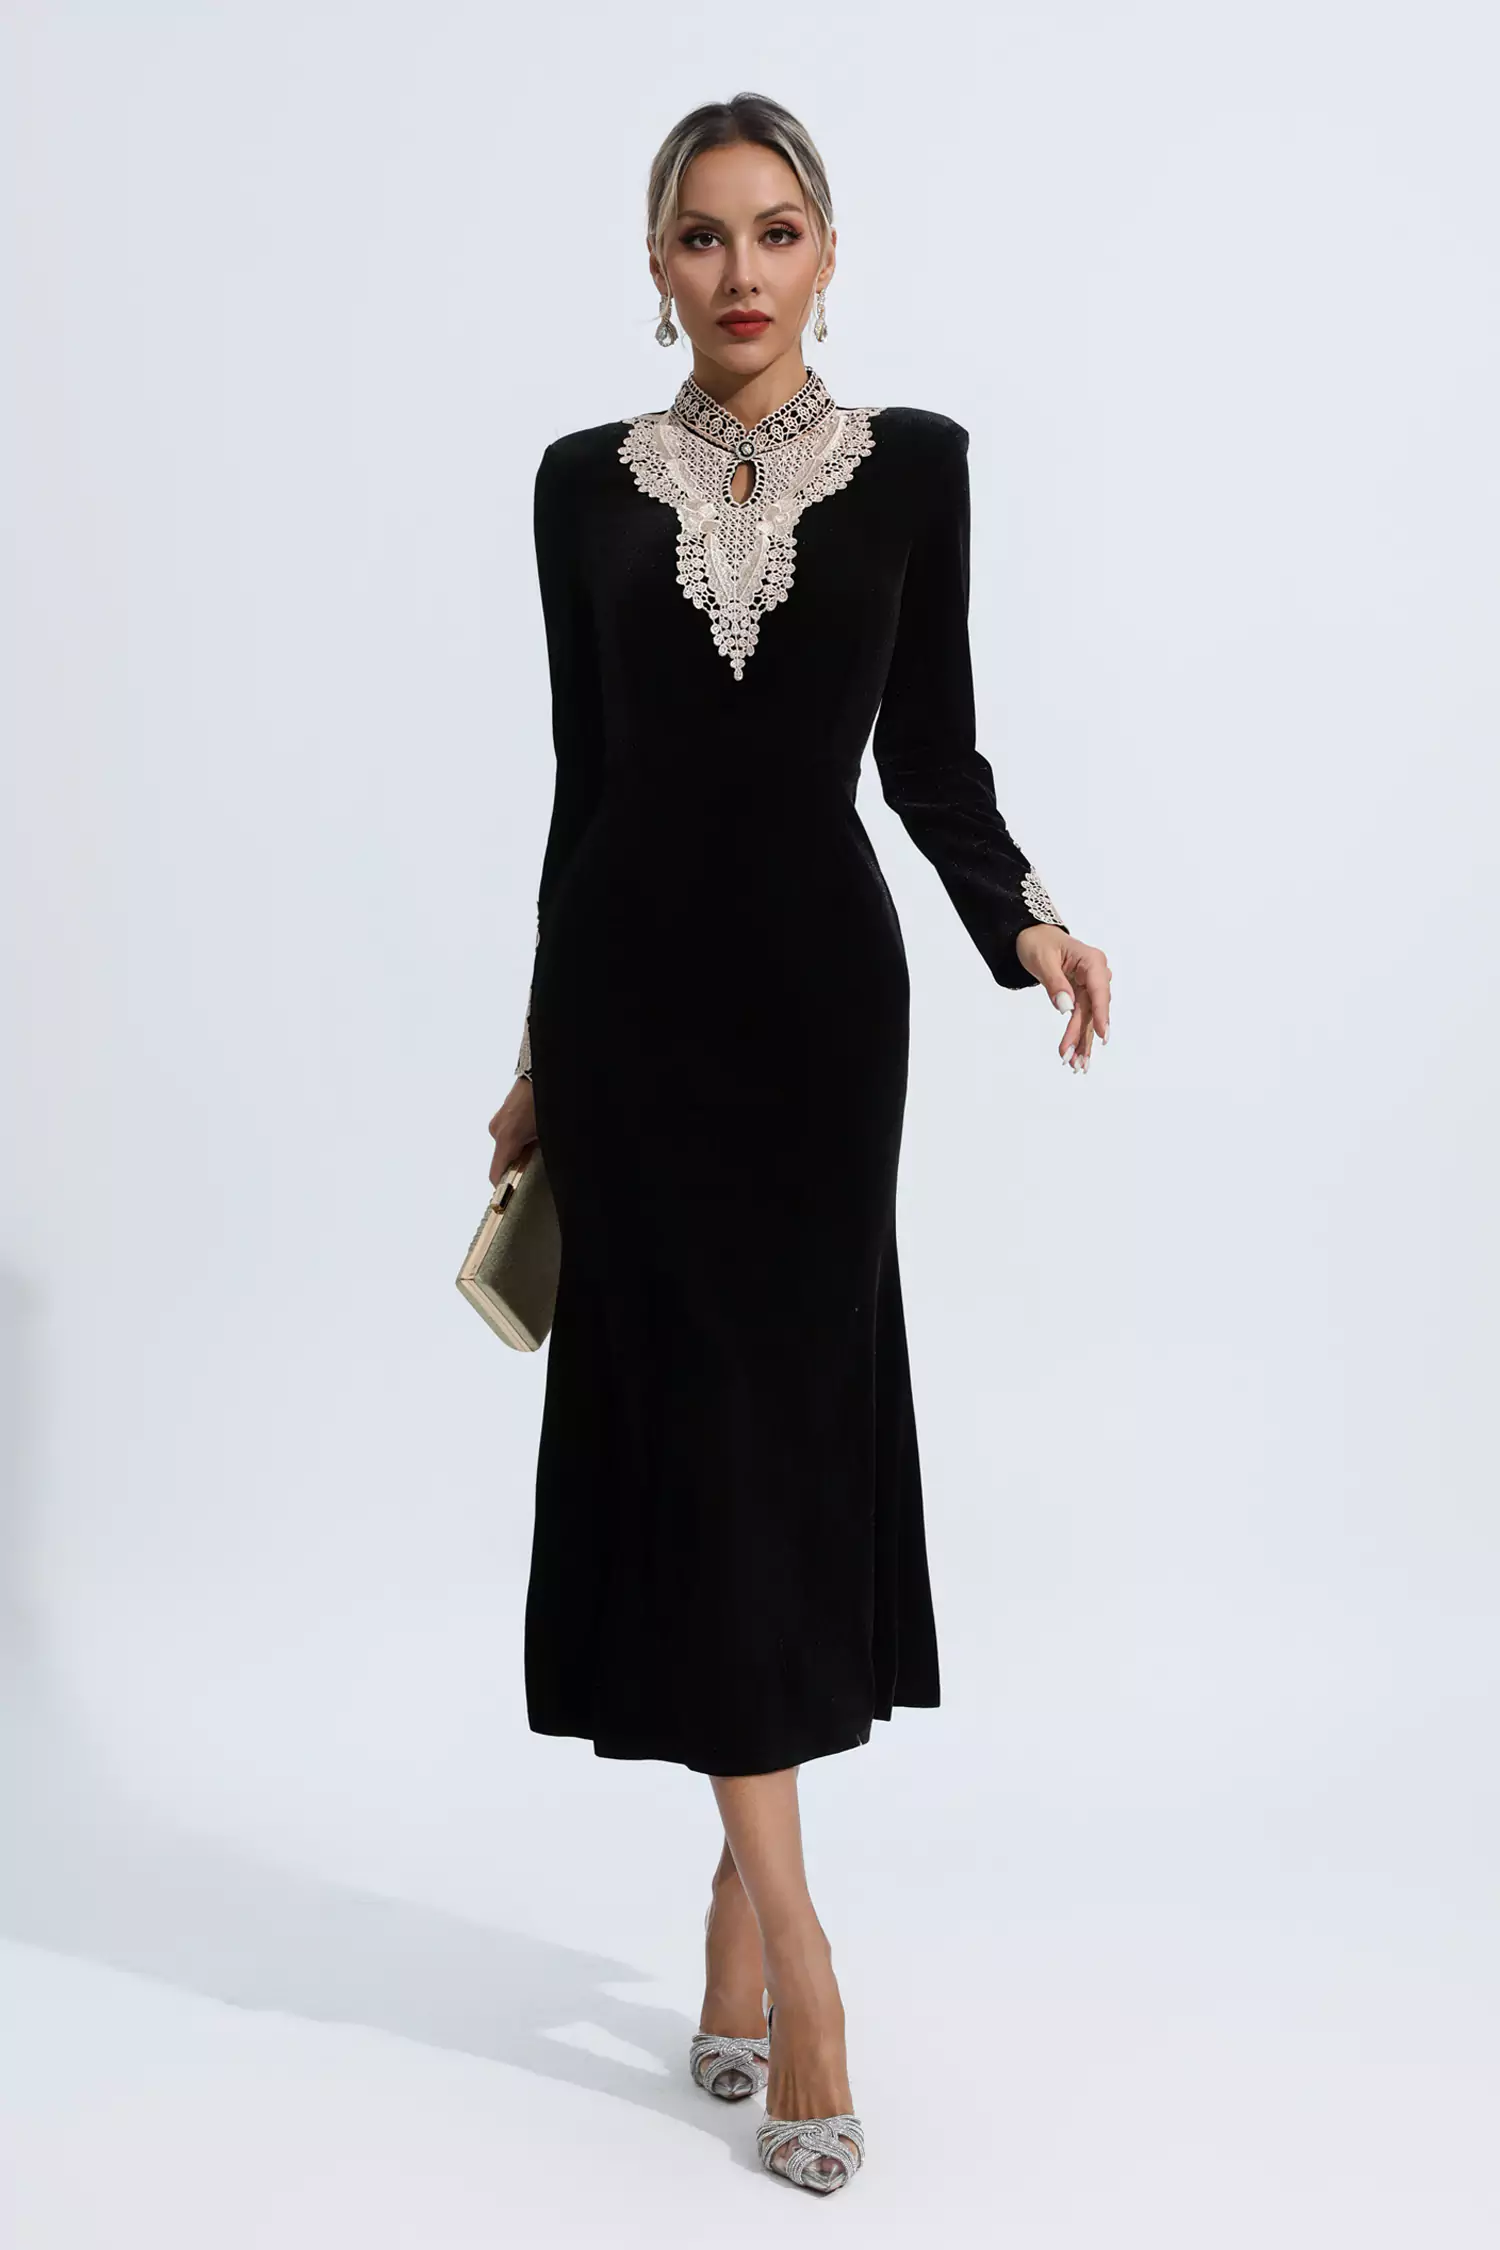 Monnalisa long-sleeve velvet dress - Black